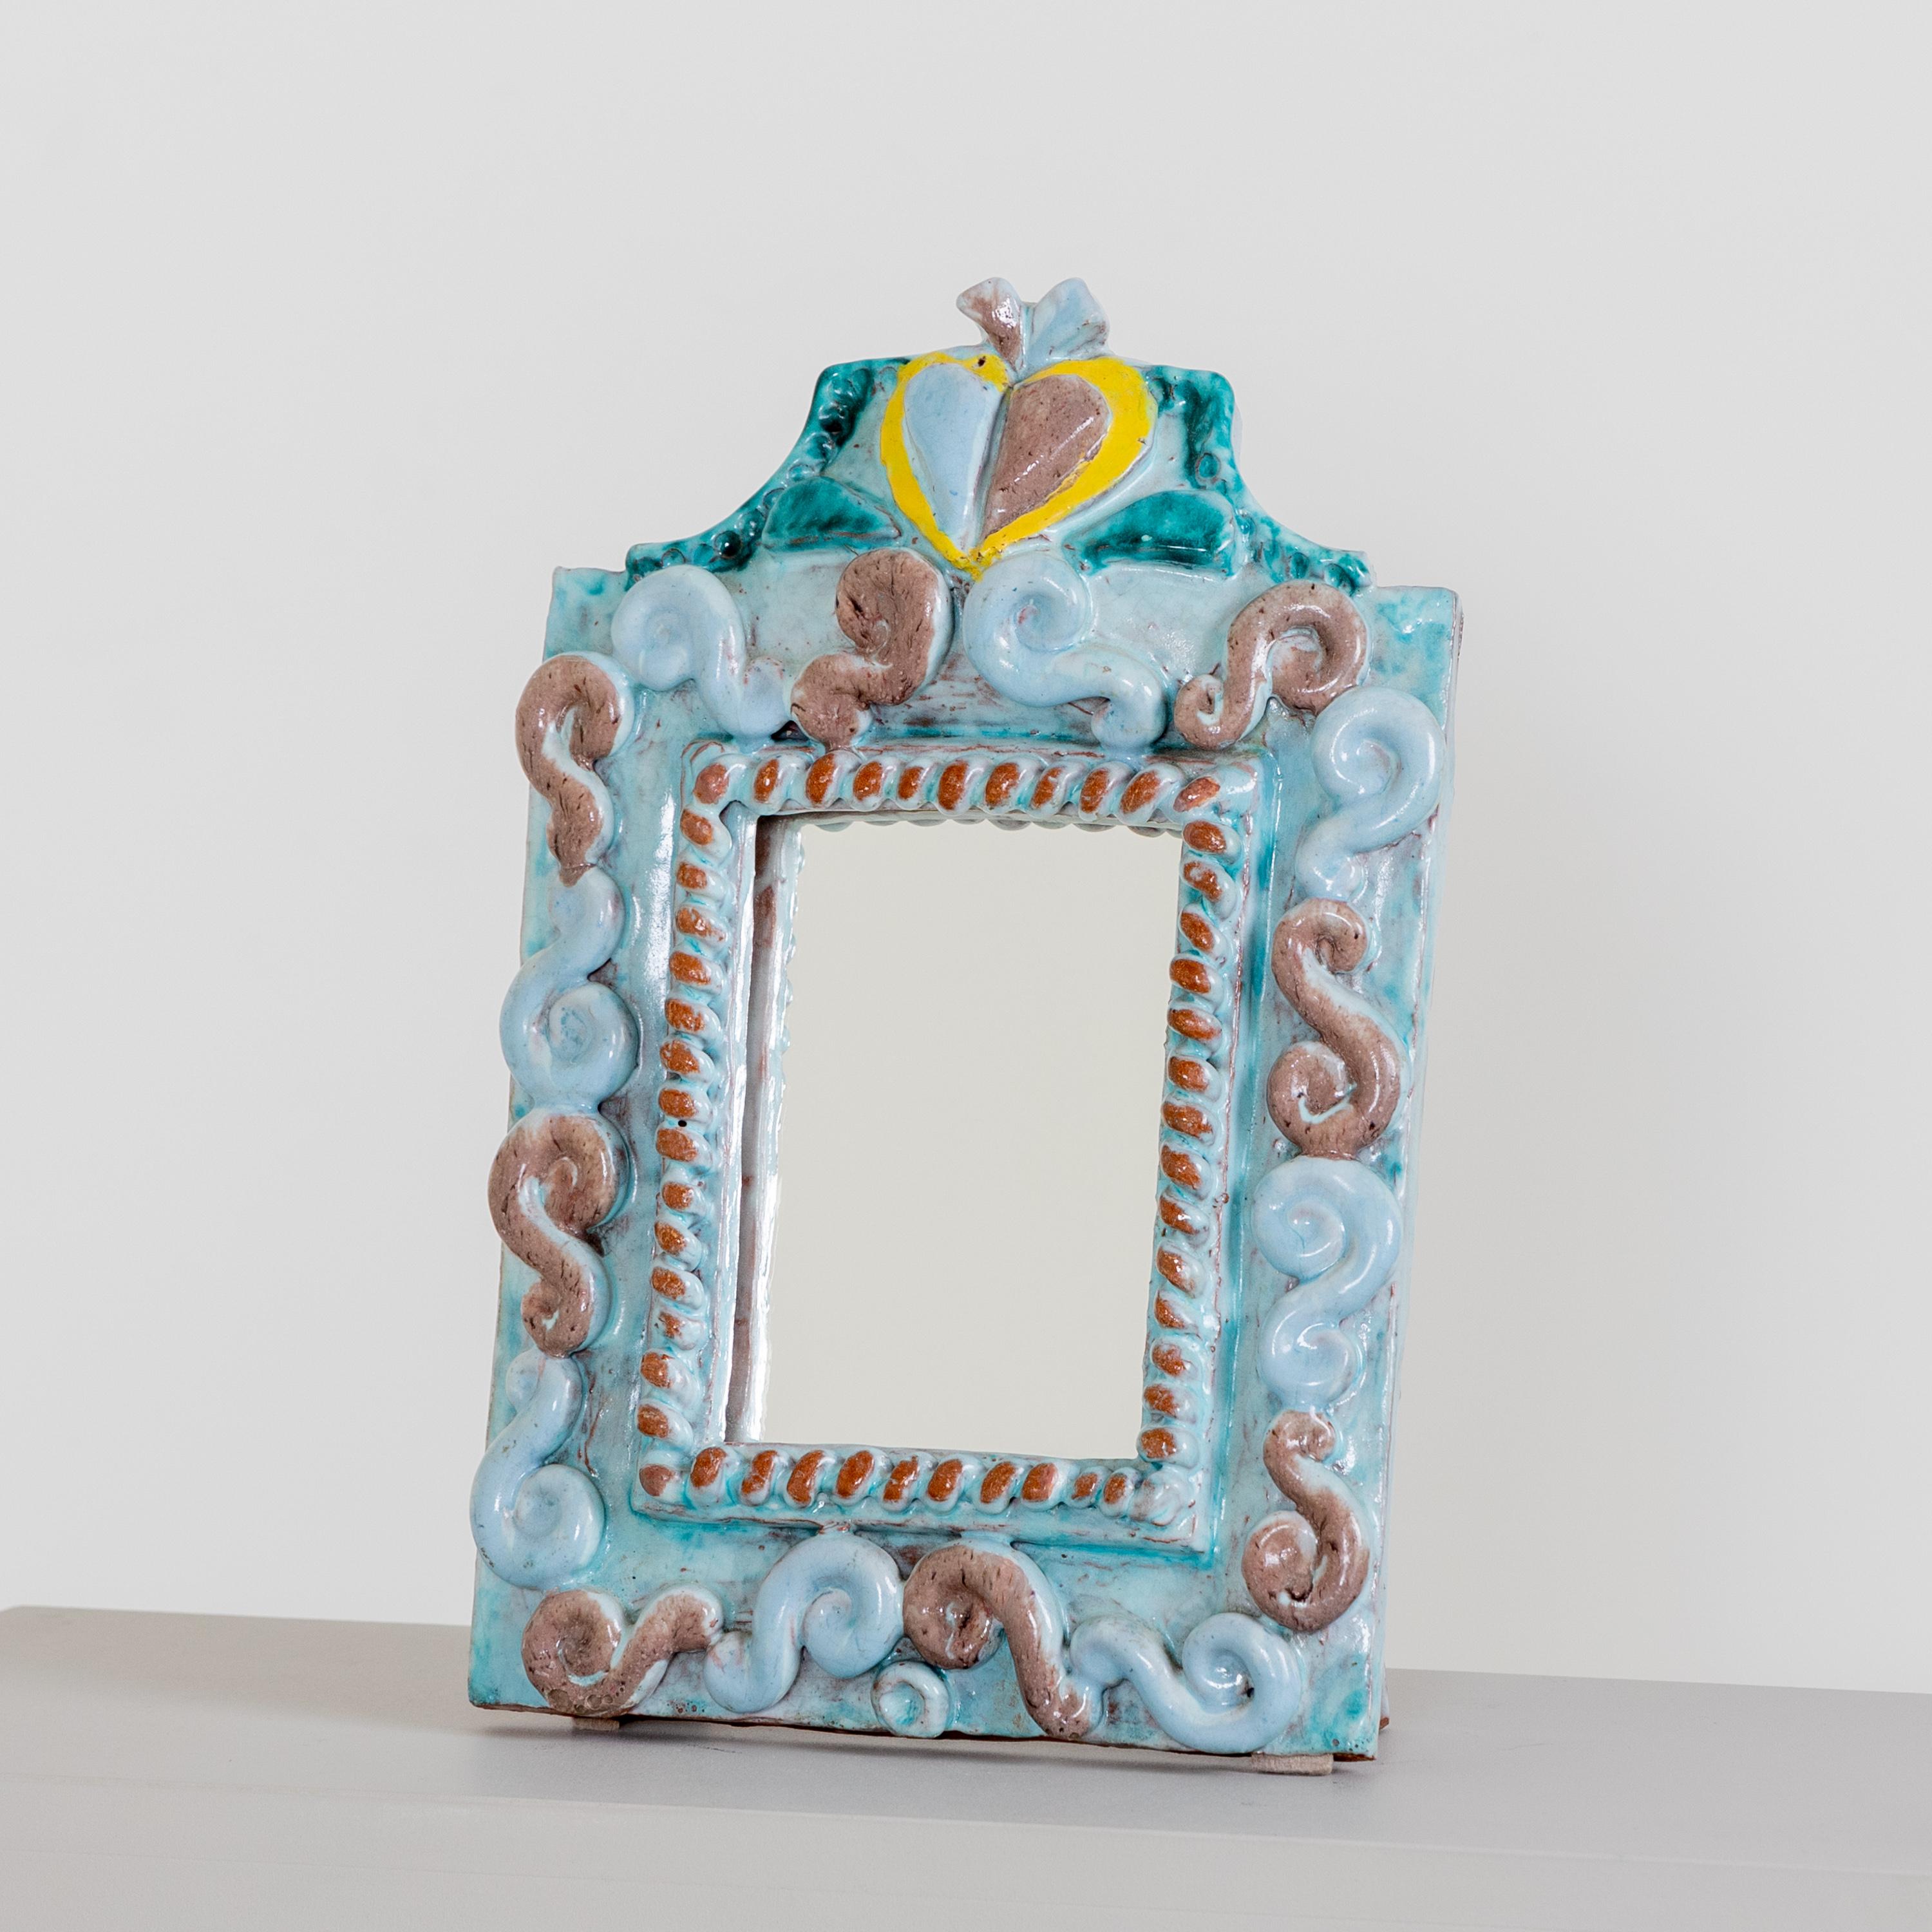 Kleiner Spiegelrahmen aus polychrom emaillierter Keramik von René Buthaud (1886-1986) alias Jean Doris. Signiert 